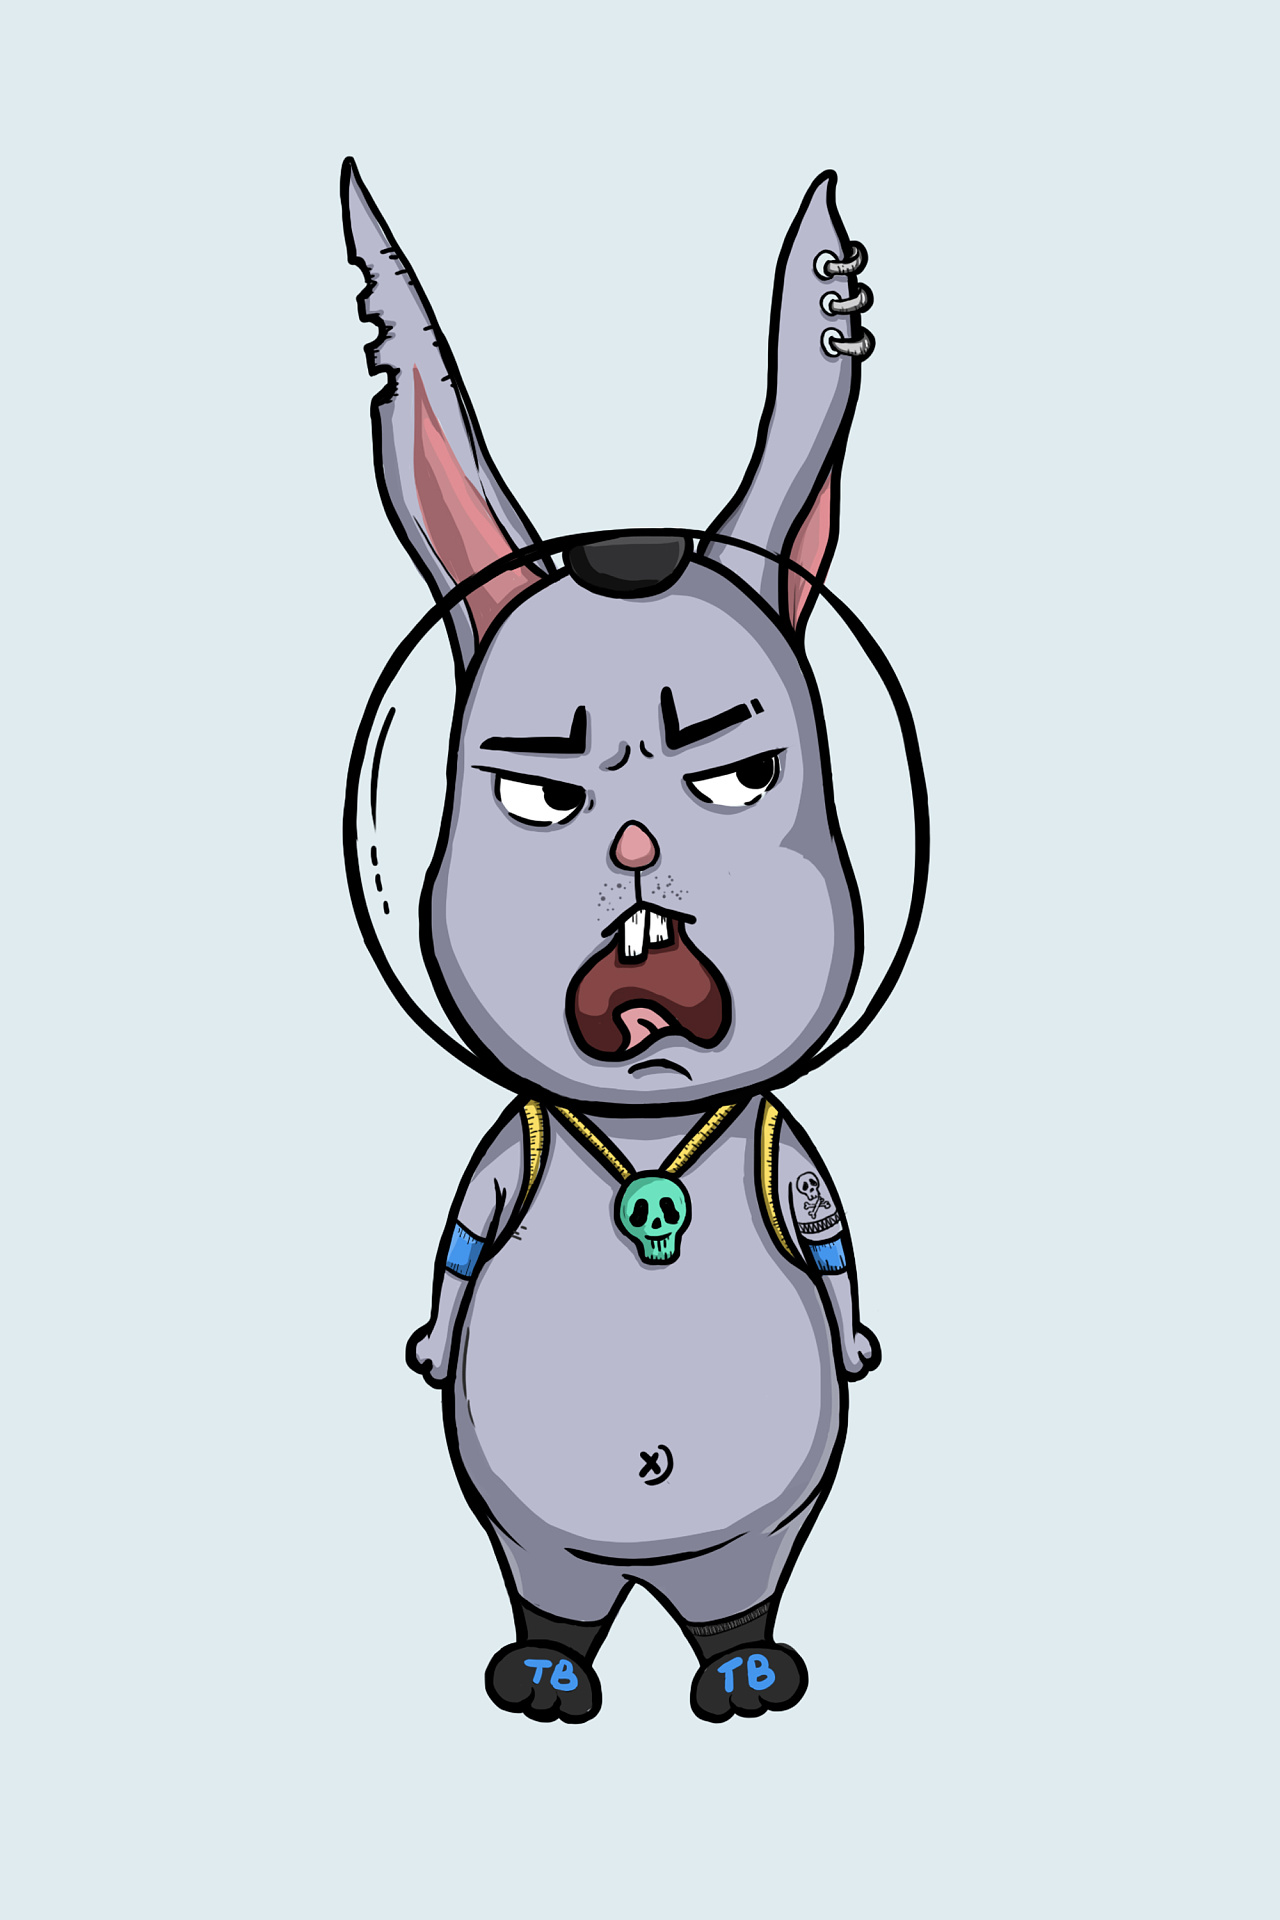 可爱卡通兔子矢量下载图片素材免费下载 - 觅知网